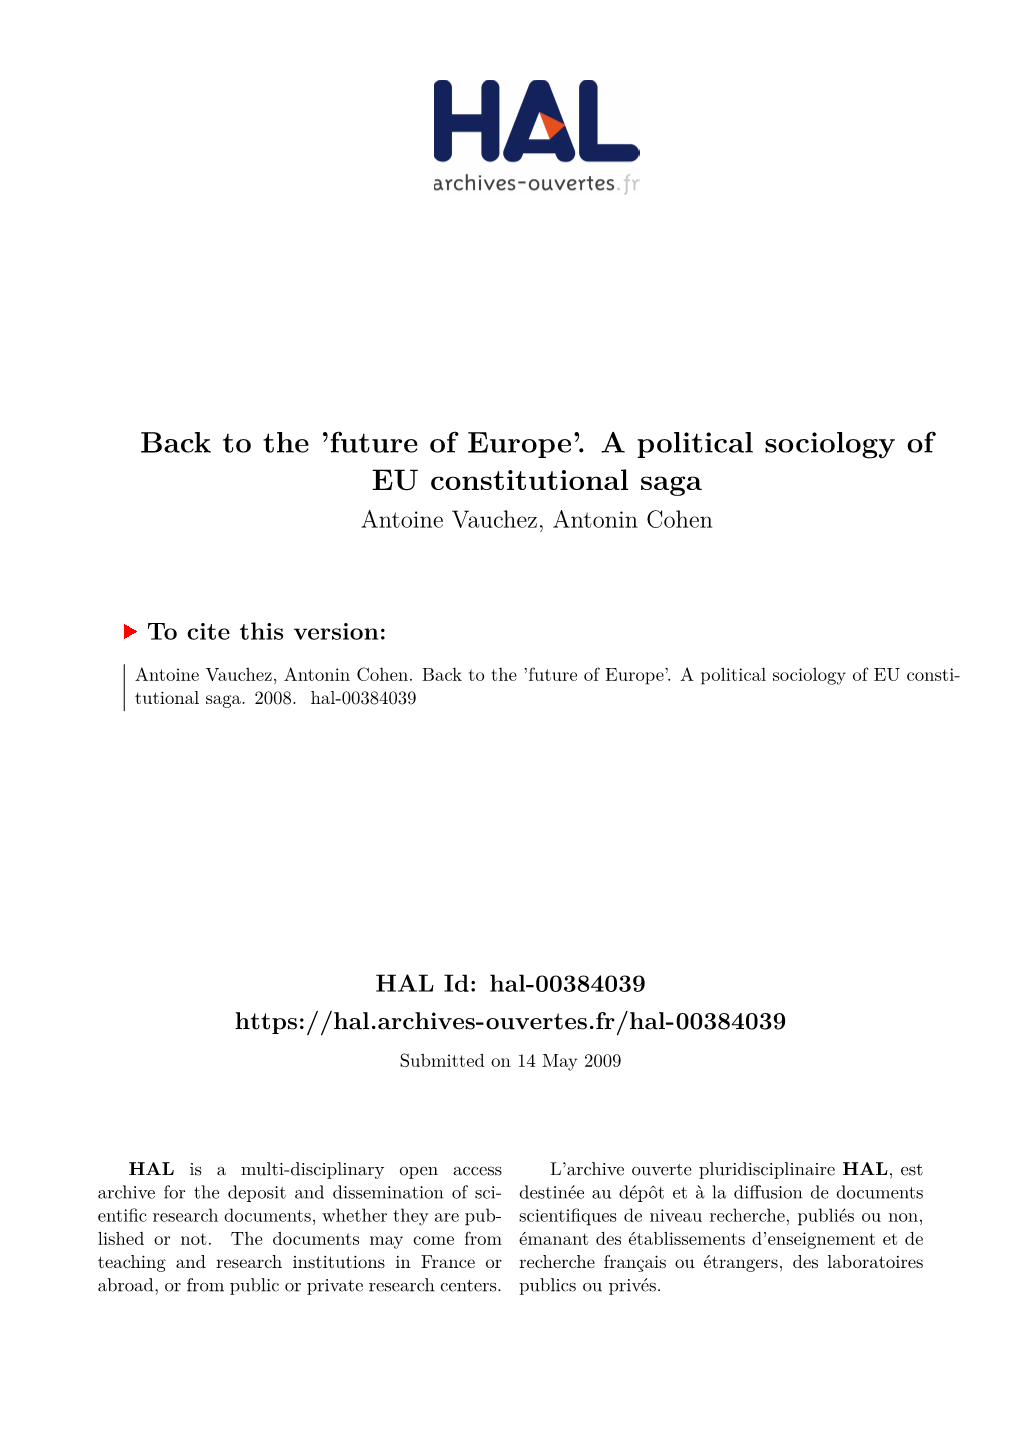 A Political Sociology of EU Constitutional Saga Antoine Vauchez, Antonin Cohen